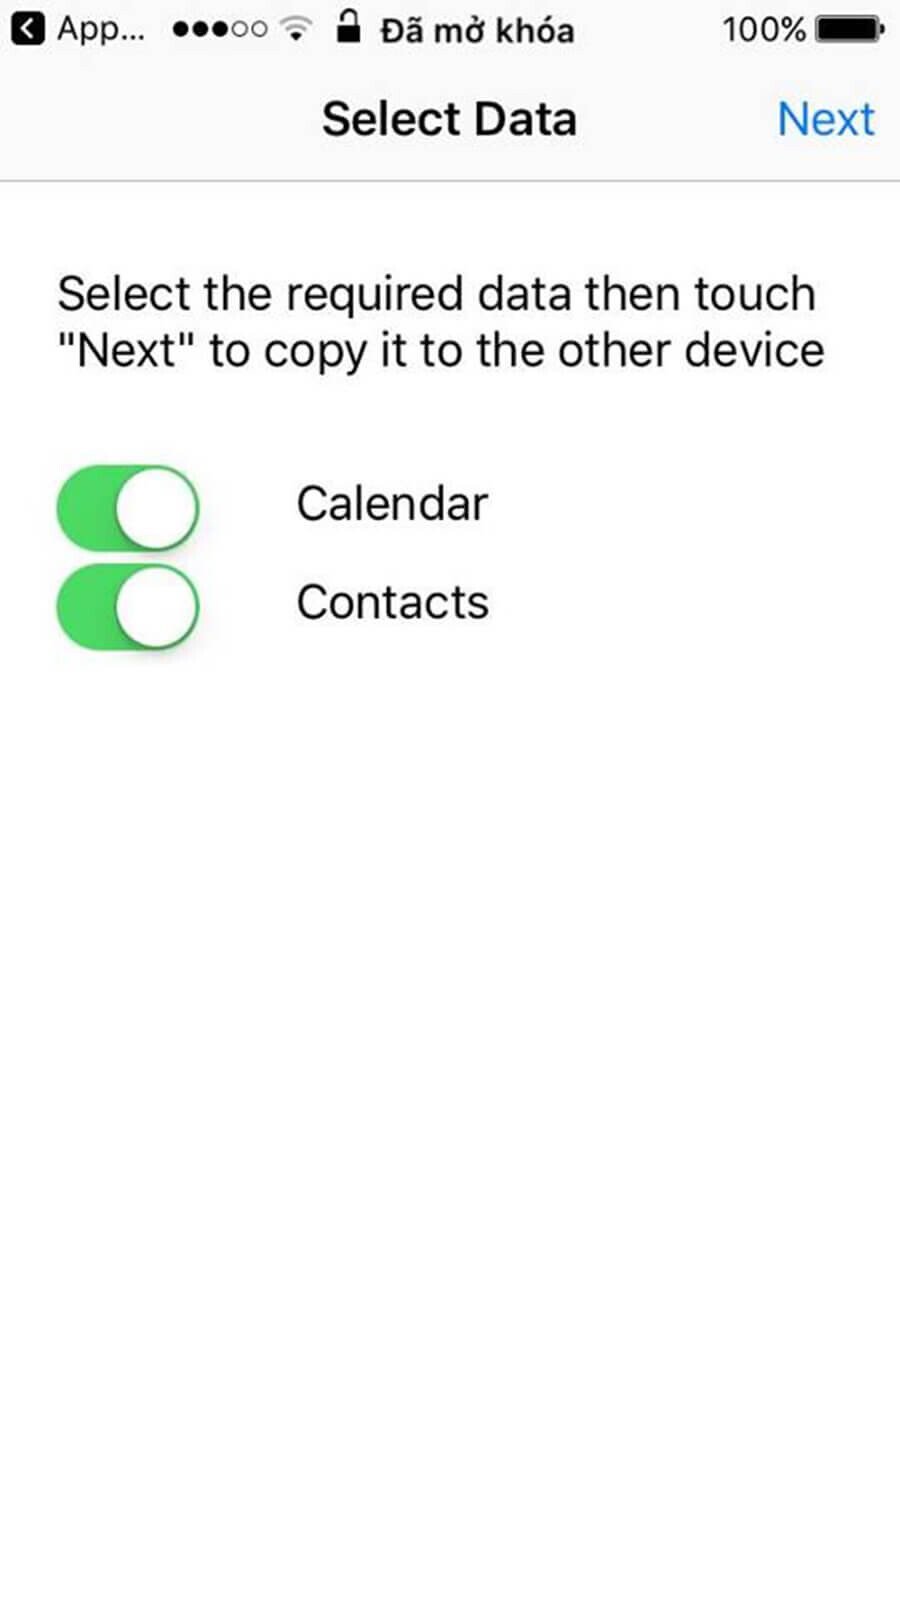 Hướng dẫn chuyển dữ liệu từ iPhone sang Android không cần cáp - Hình 6